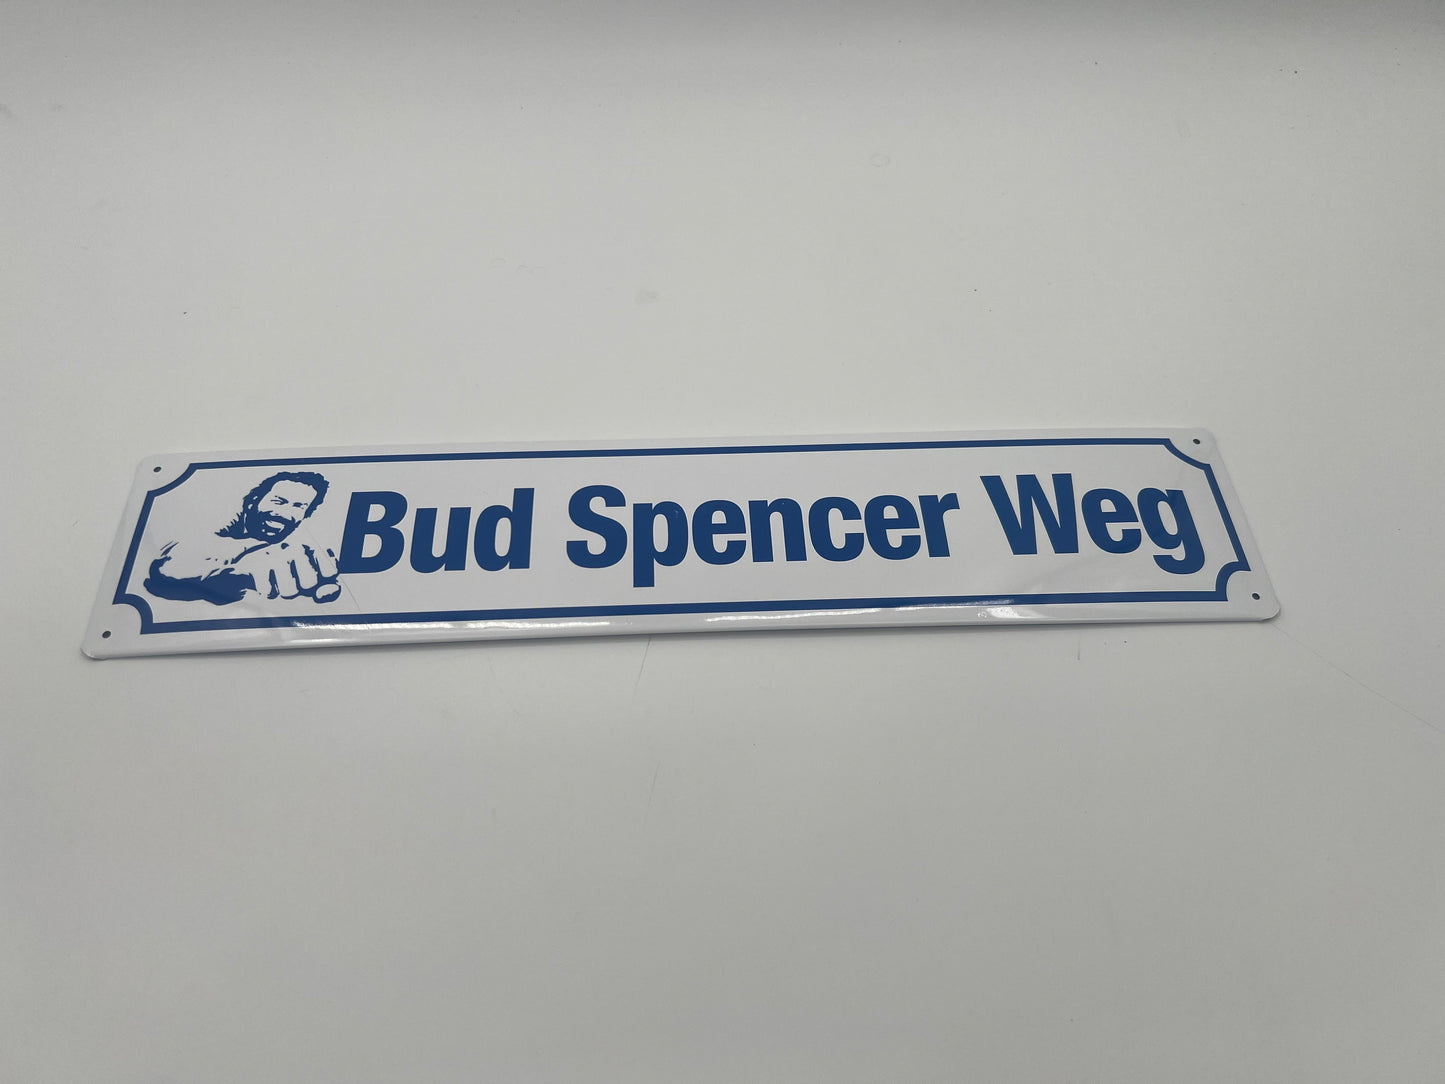 Blechschild "Bud Spencer Weg"